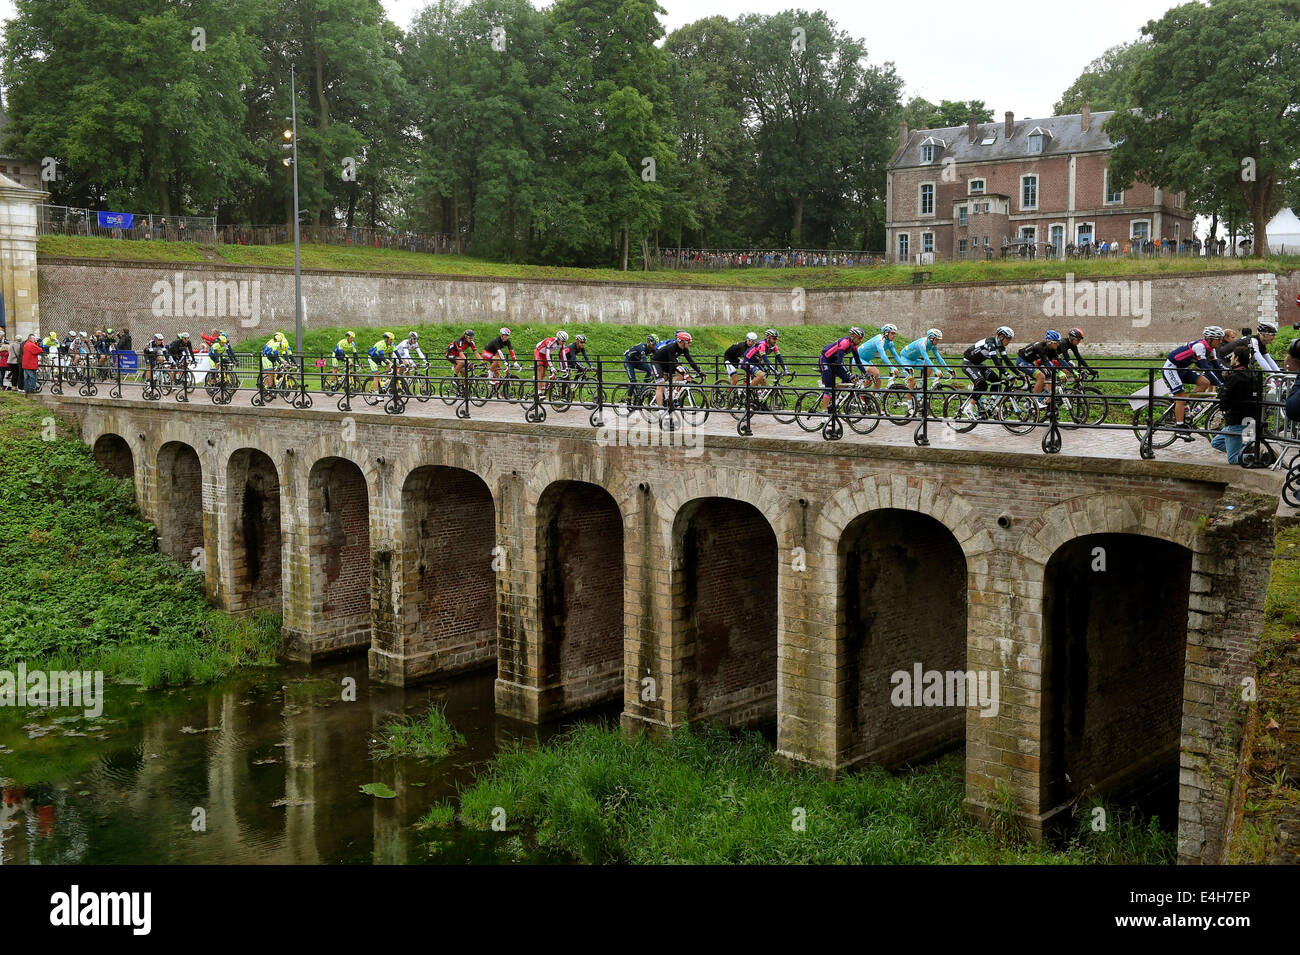 10.07.2014. Arras à Reims, France. Tour de France en vélo, l'étape 6. Le peleton traverse un vieux pont de pierre Banque D'Images